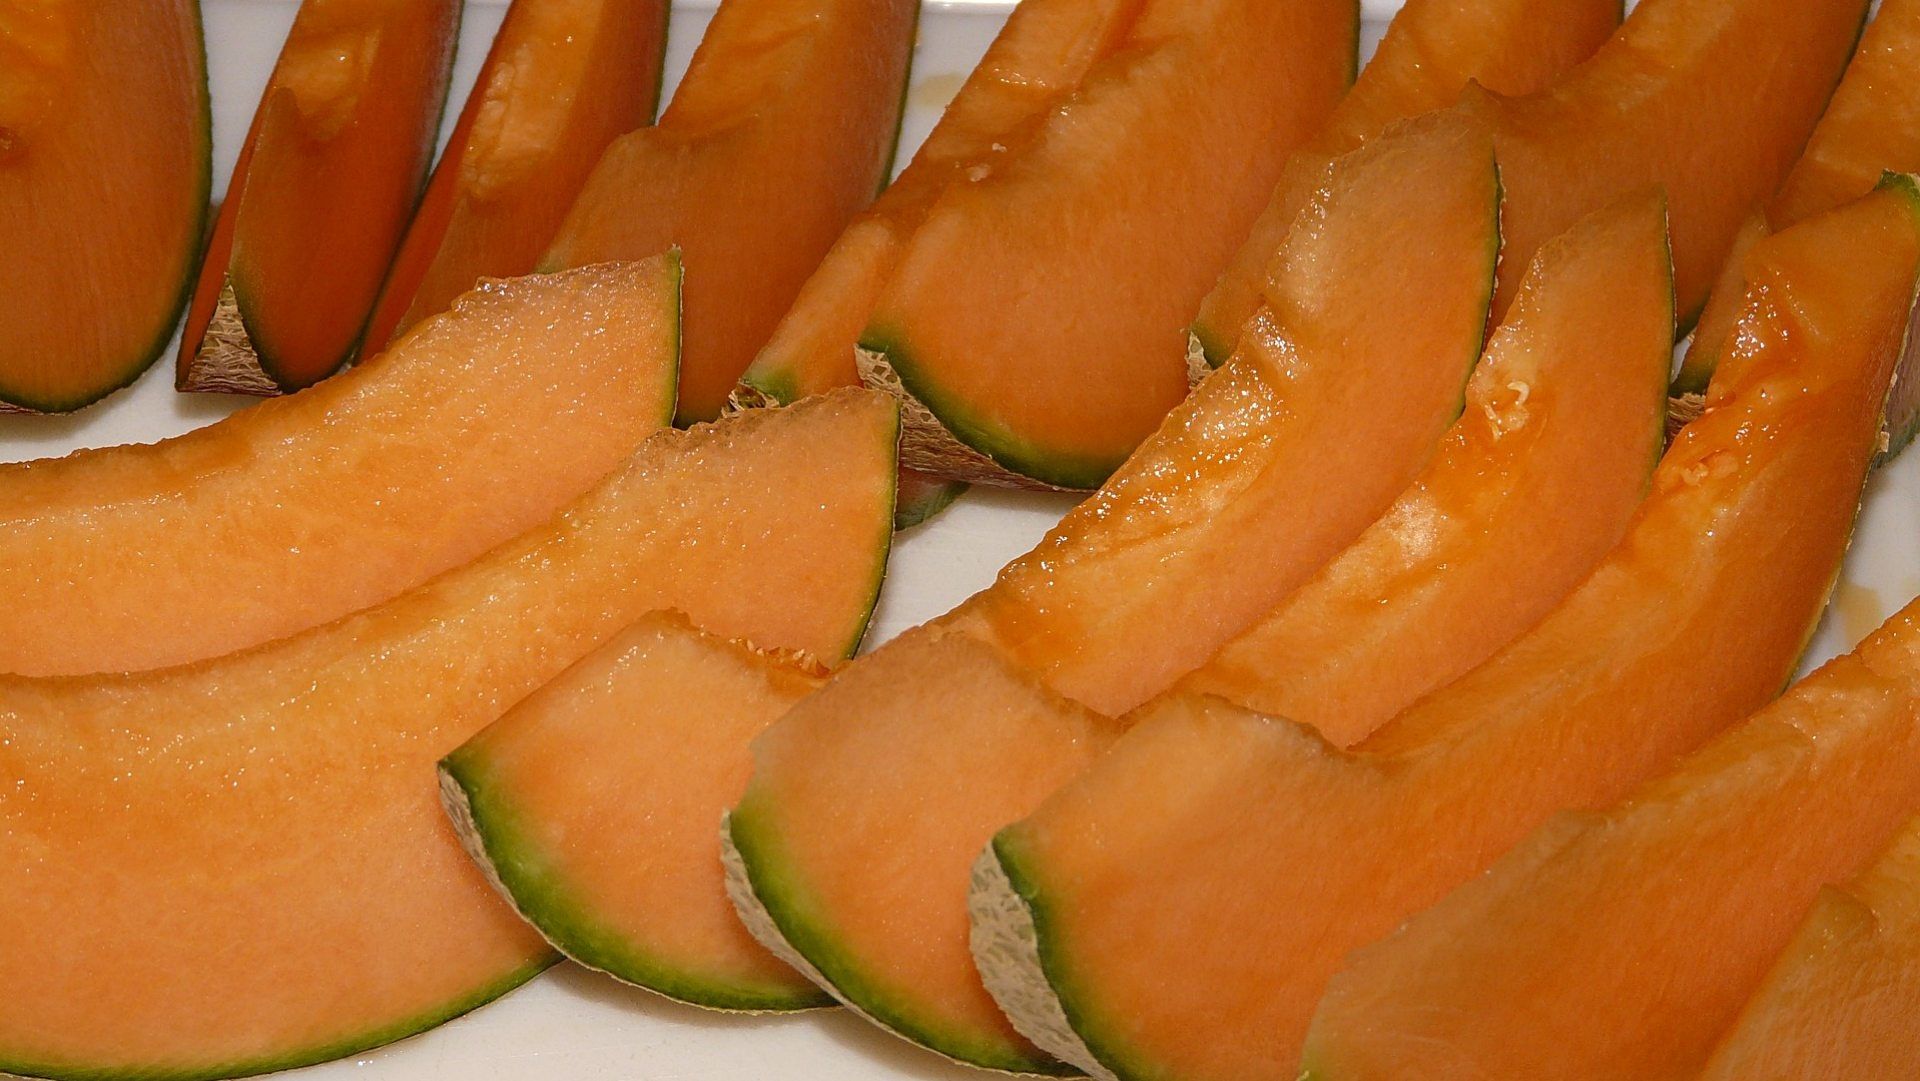 Canadá reporta brote de salmonela presuntamente ligado a melones de México